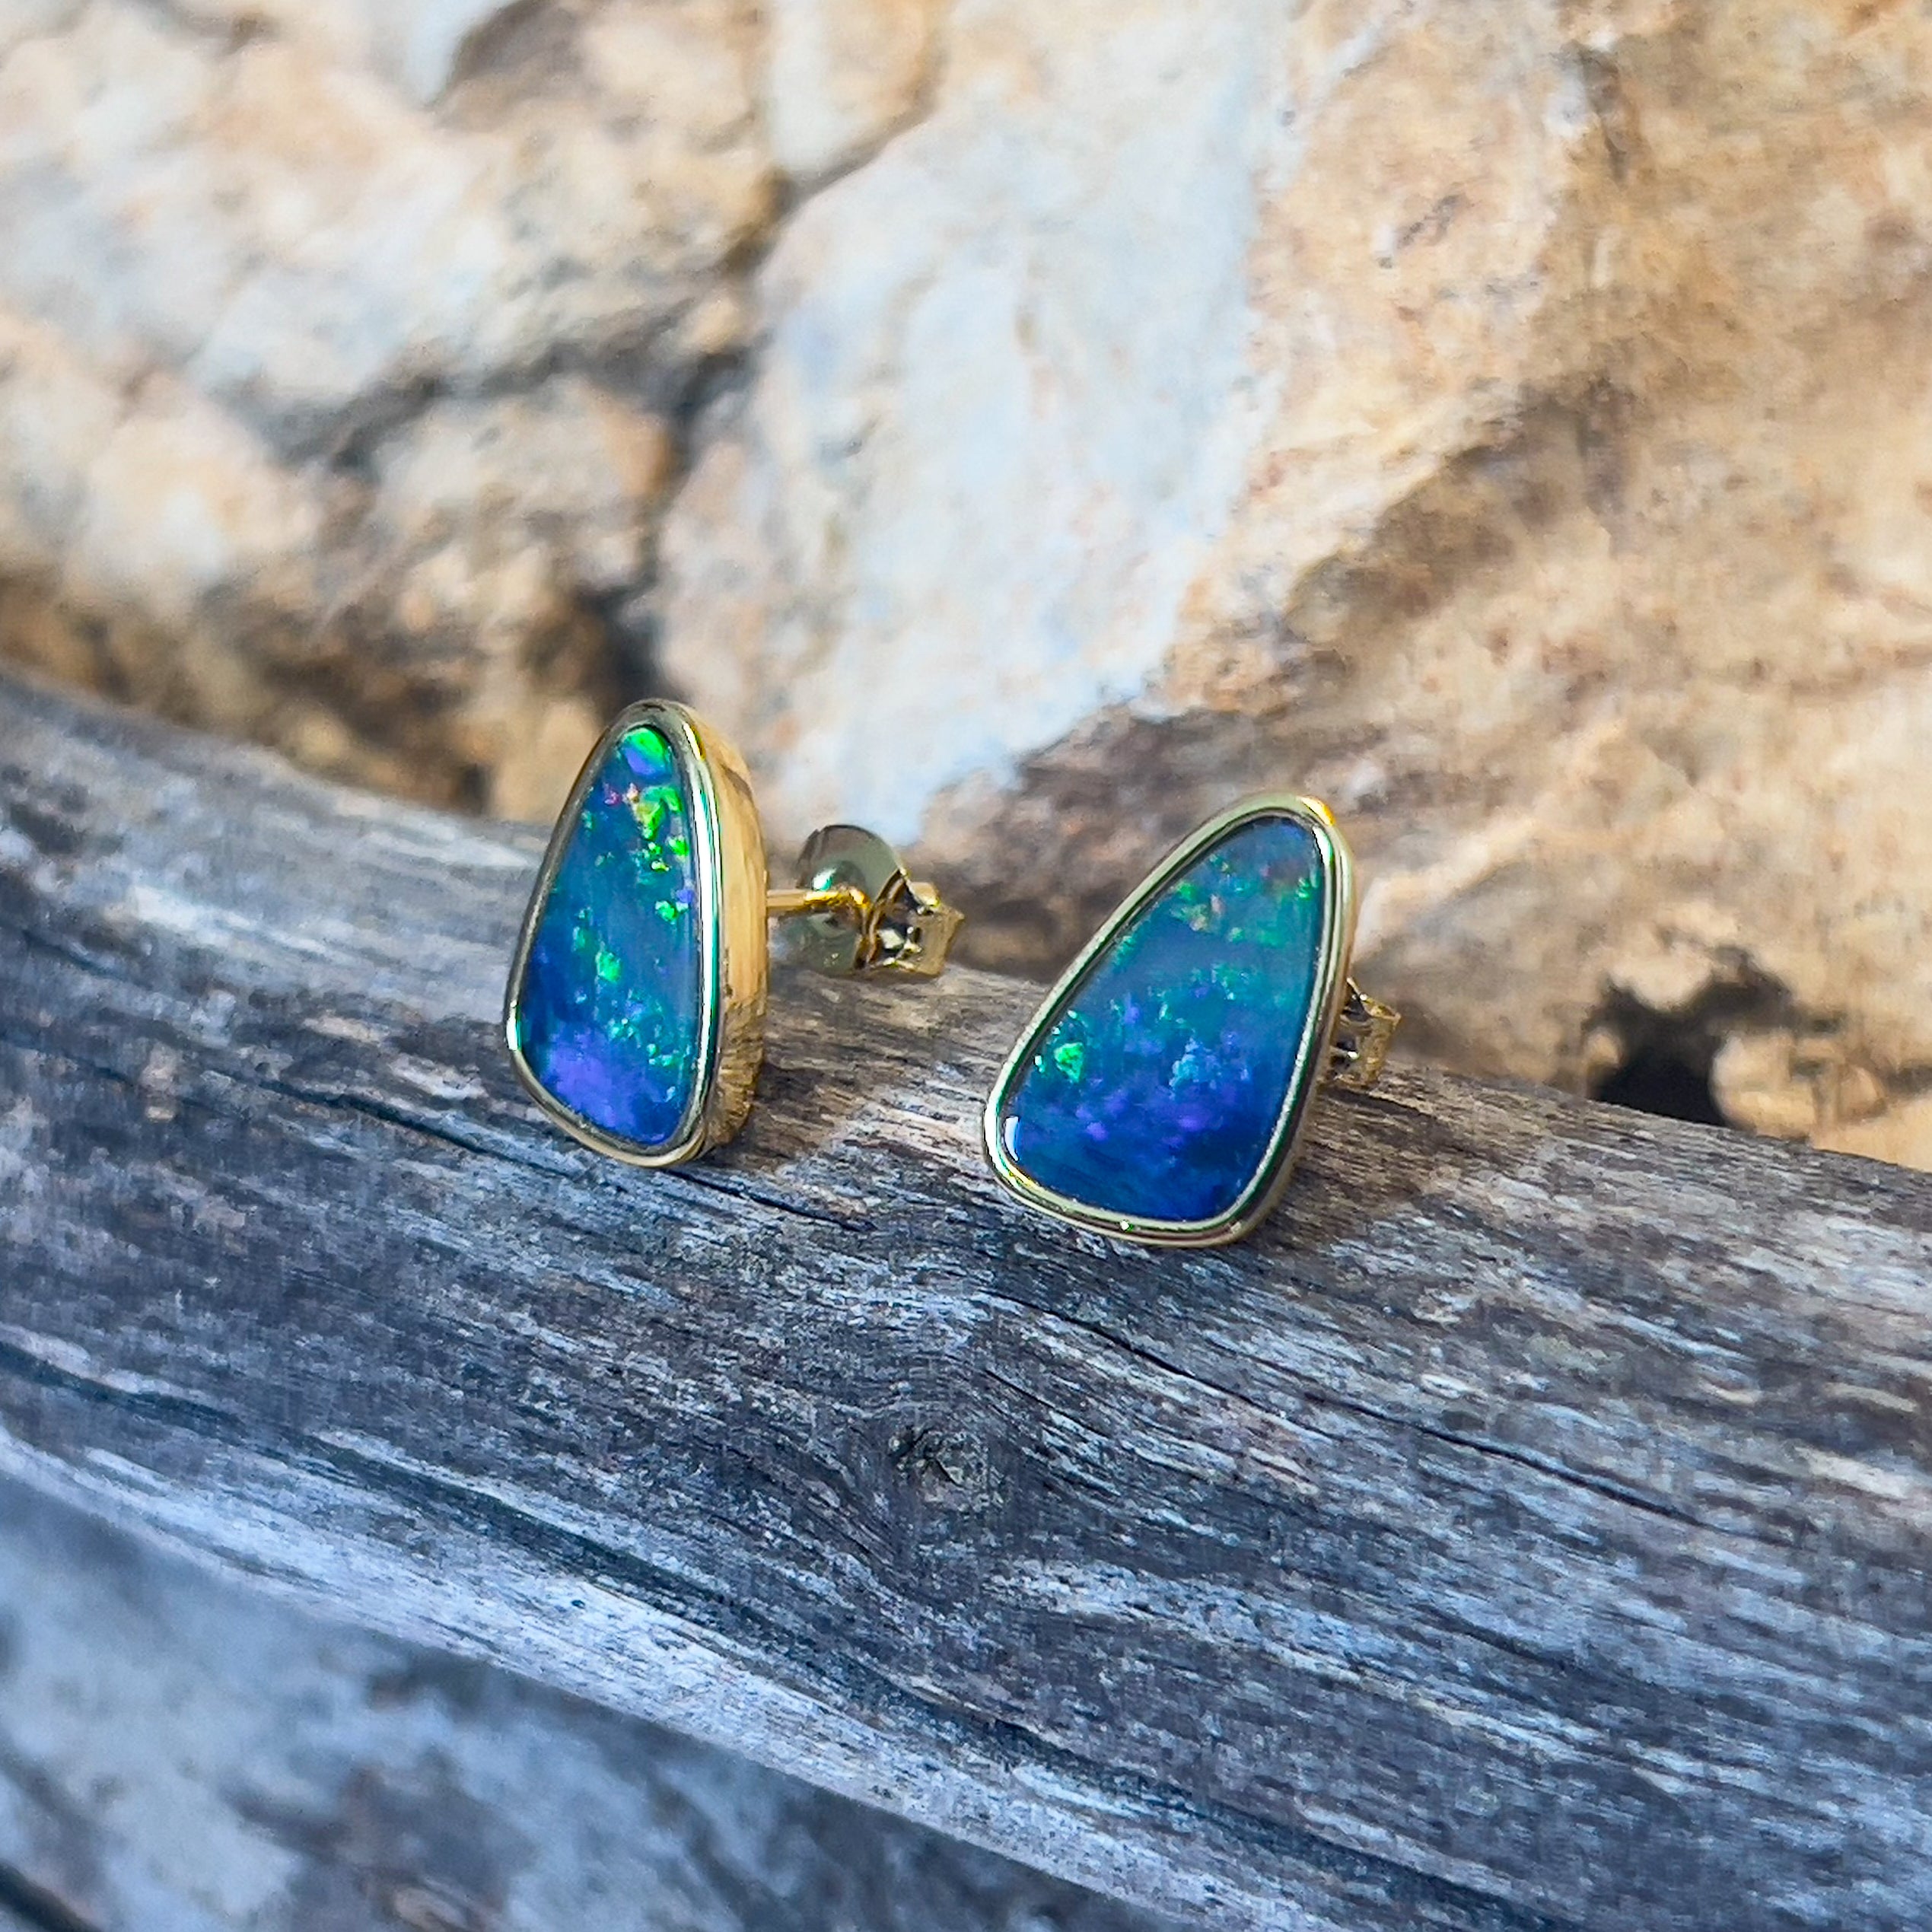 Gold Plated sterling silver freeform Doublet earrings studs - Masterpiece Jewellery Opal & Gems Sydney Australia | Online Shop